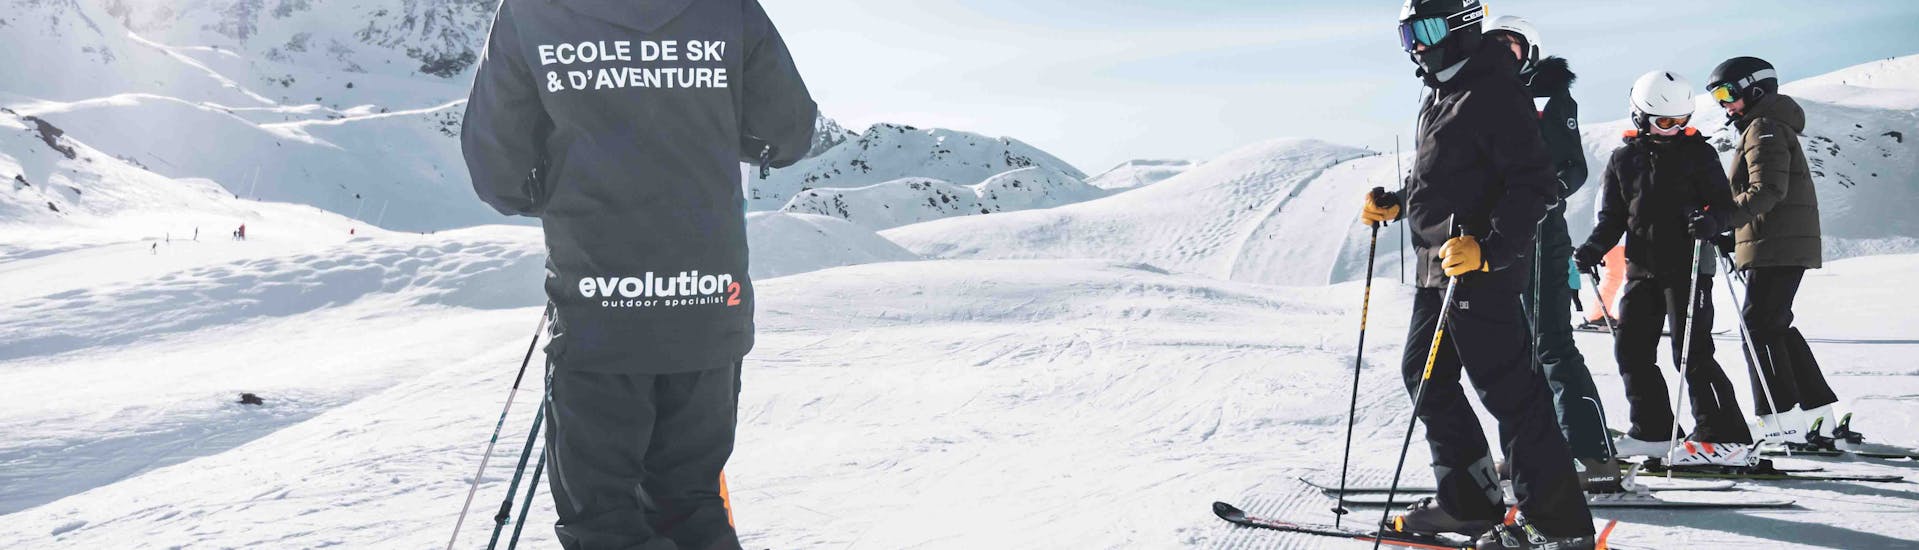 Clases de esquí para adultos a partir de 15 años para todos los niveles con Arc Aventures by Evolution 2 1800 .